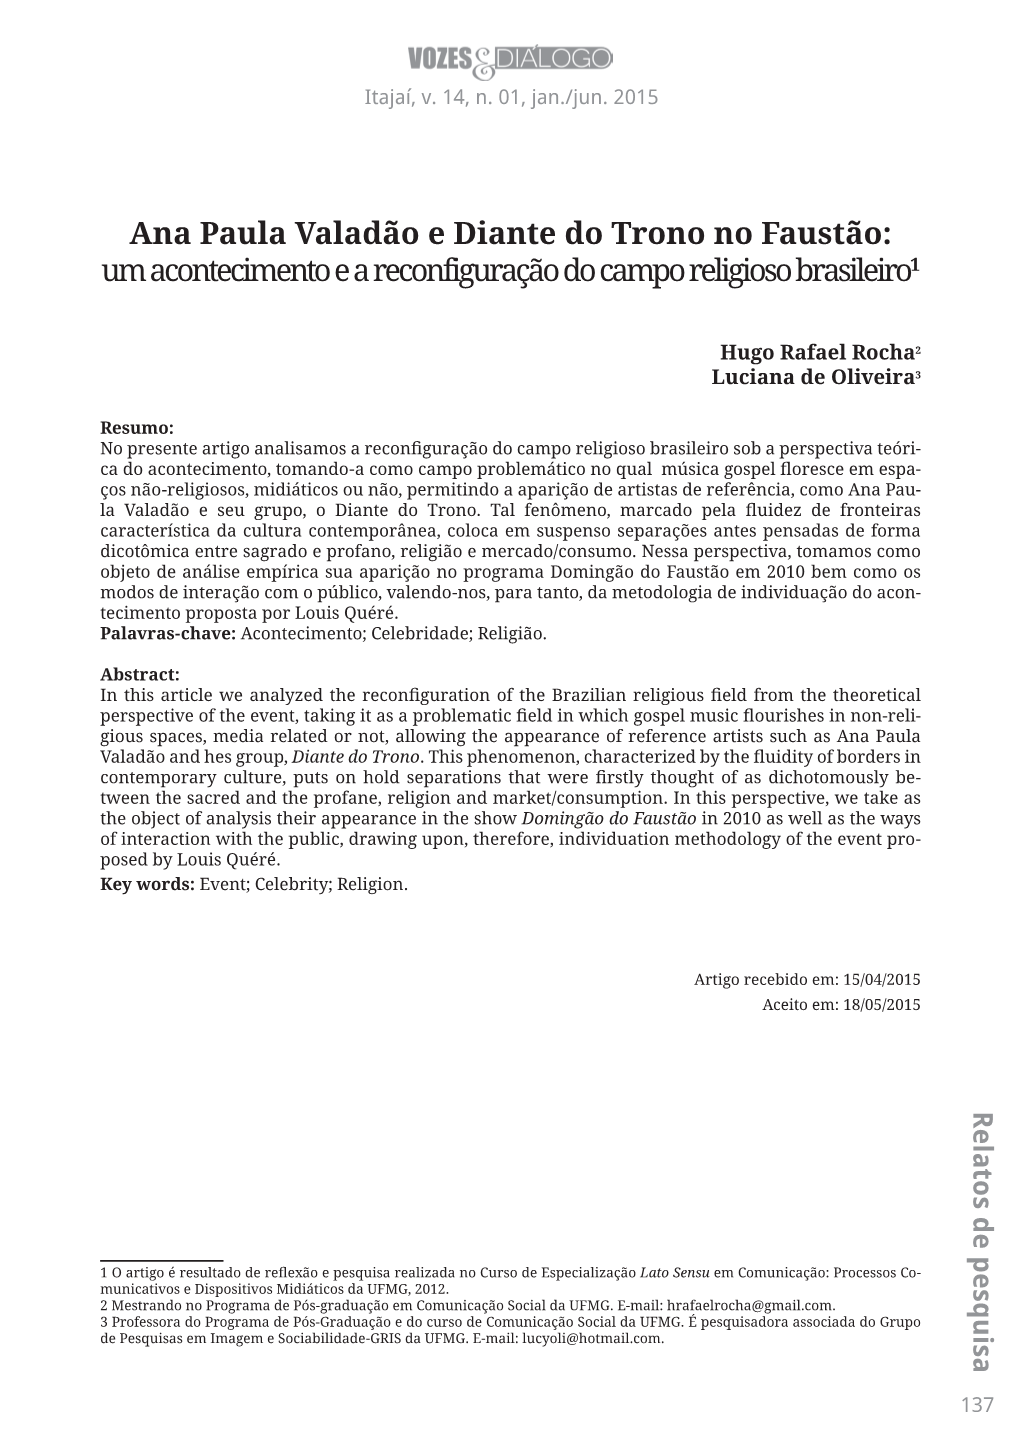 Ana Paula Valadão E Diante Do Trono No Faustão: Um Acontecimento E a Reconfiguração Do Campo Religioso Brasileiro1